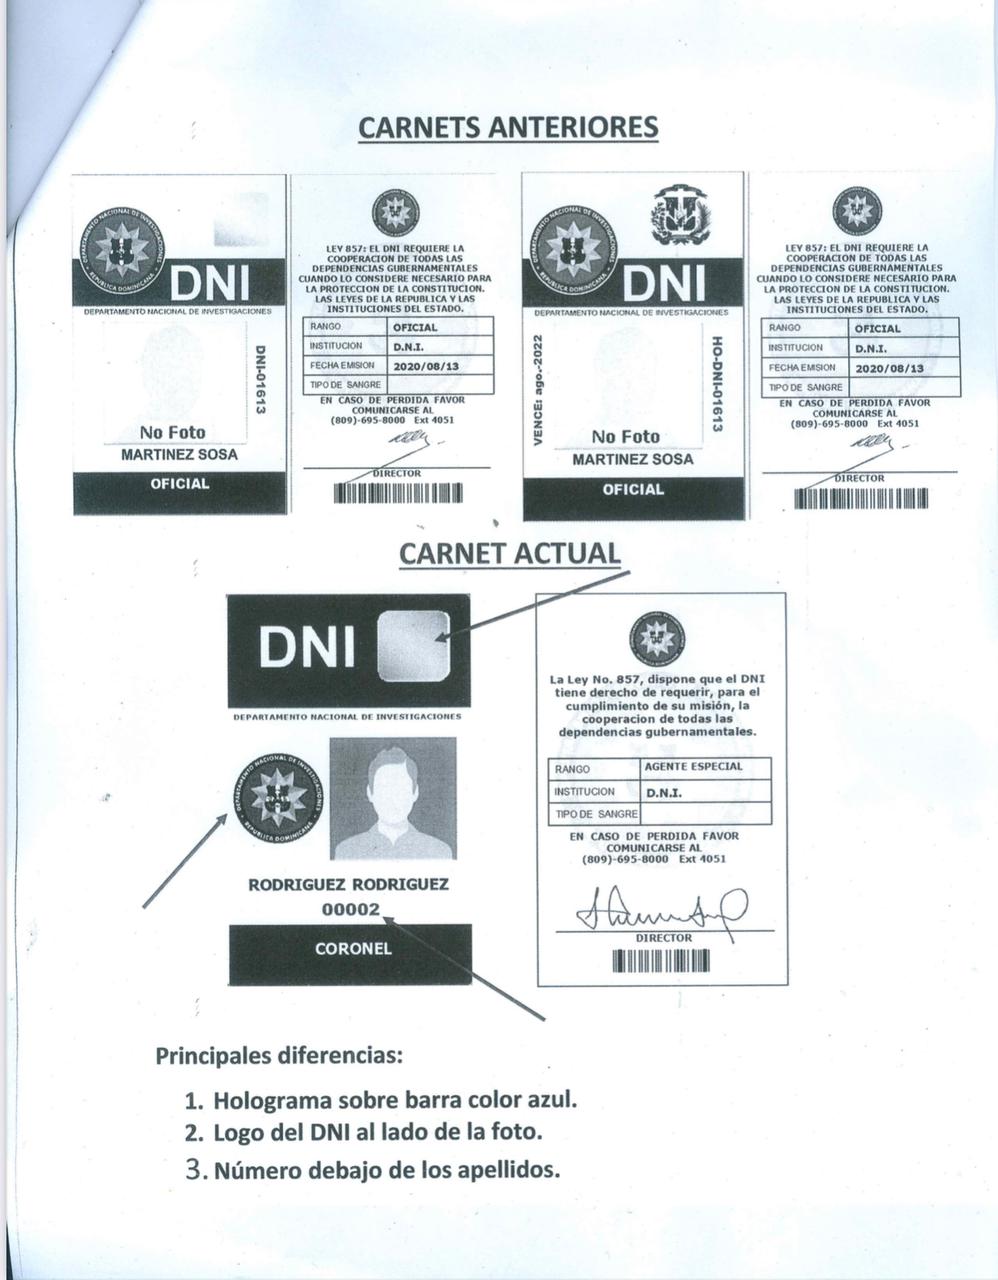 DNI aclara que el carnet de la persona detenida en NY no fue emitido en la presente gestión